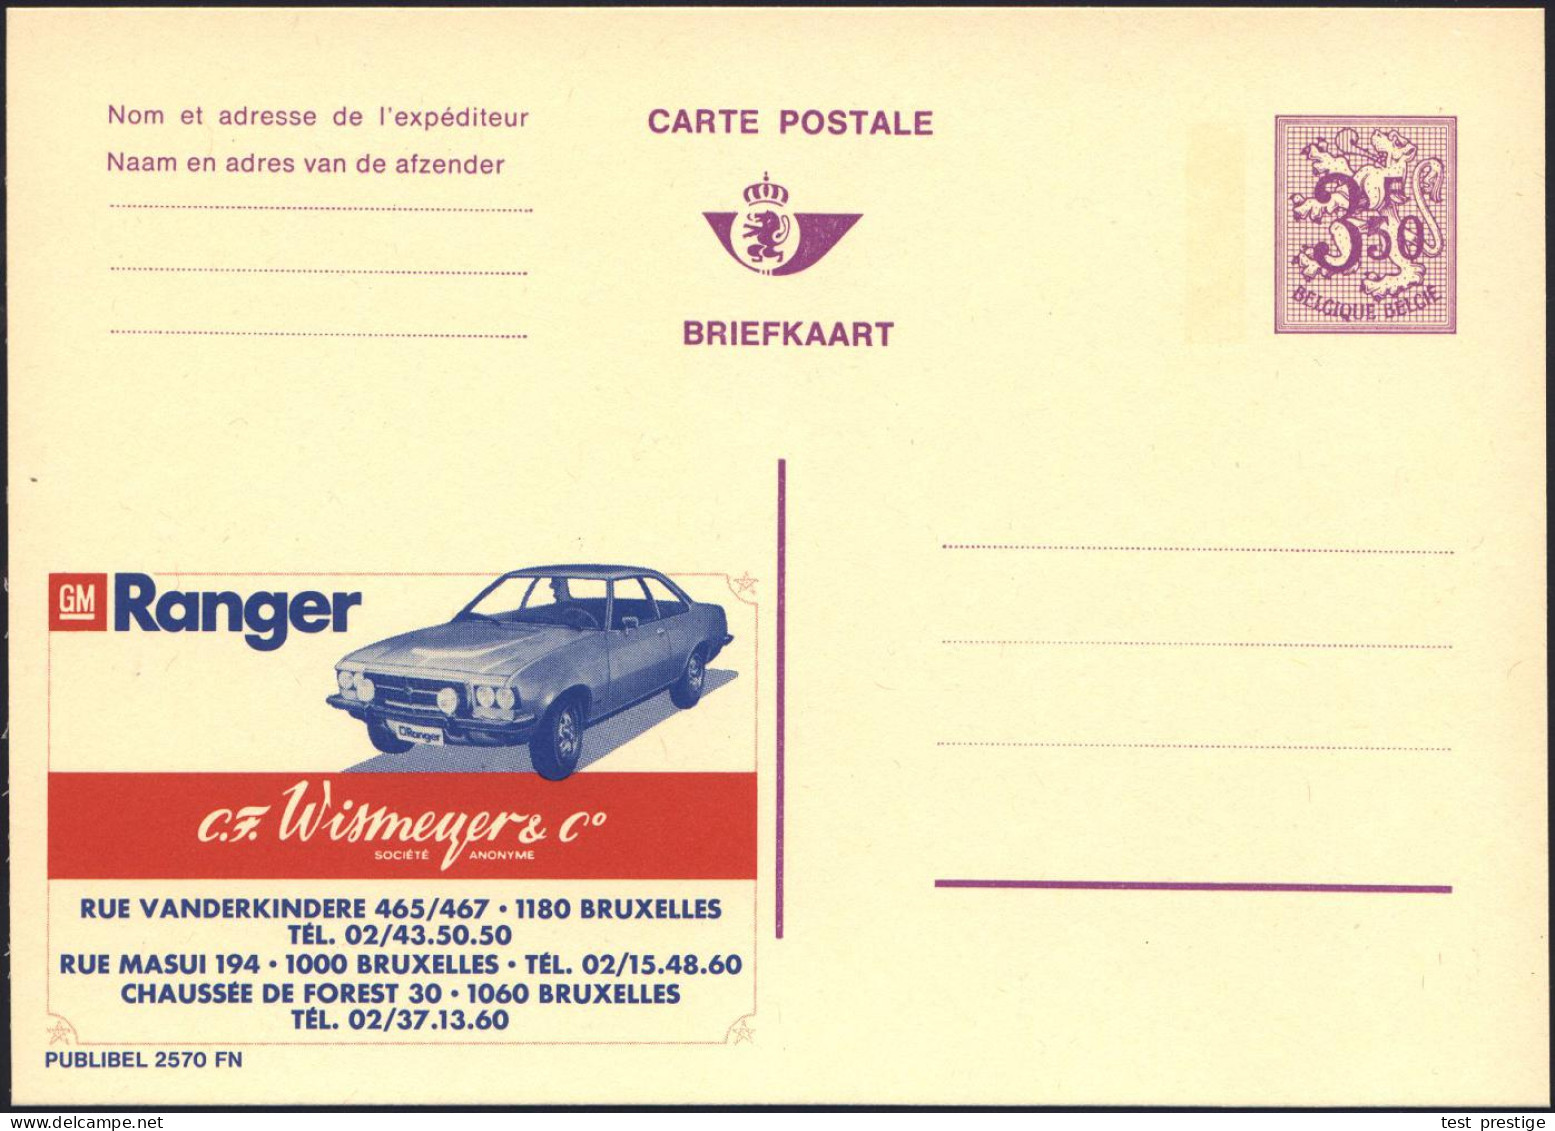 BELGIEN 1972 3,50 F. Reklame-P., Wappenlöwe, Viol.: GM Ranger/C. F. Wismeyer & Co.. = Ranger Limousine , Ungebr. (Mi.P 3 - Coches